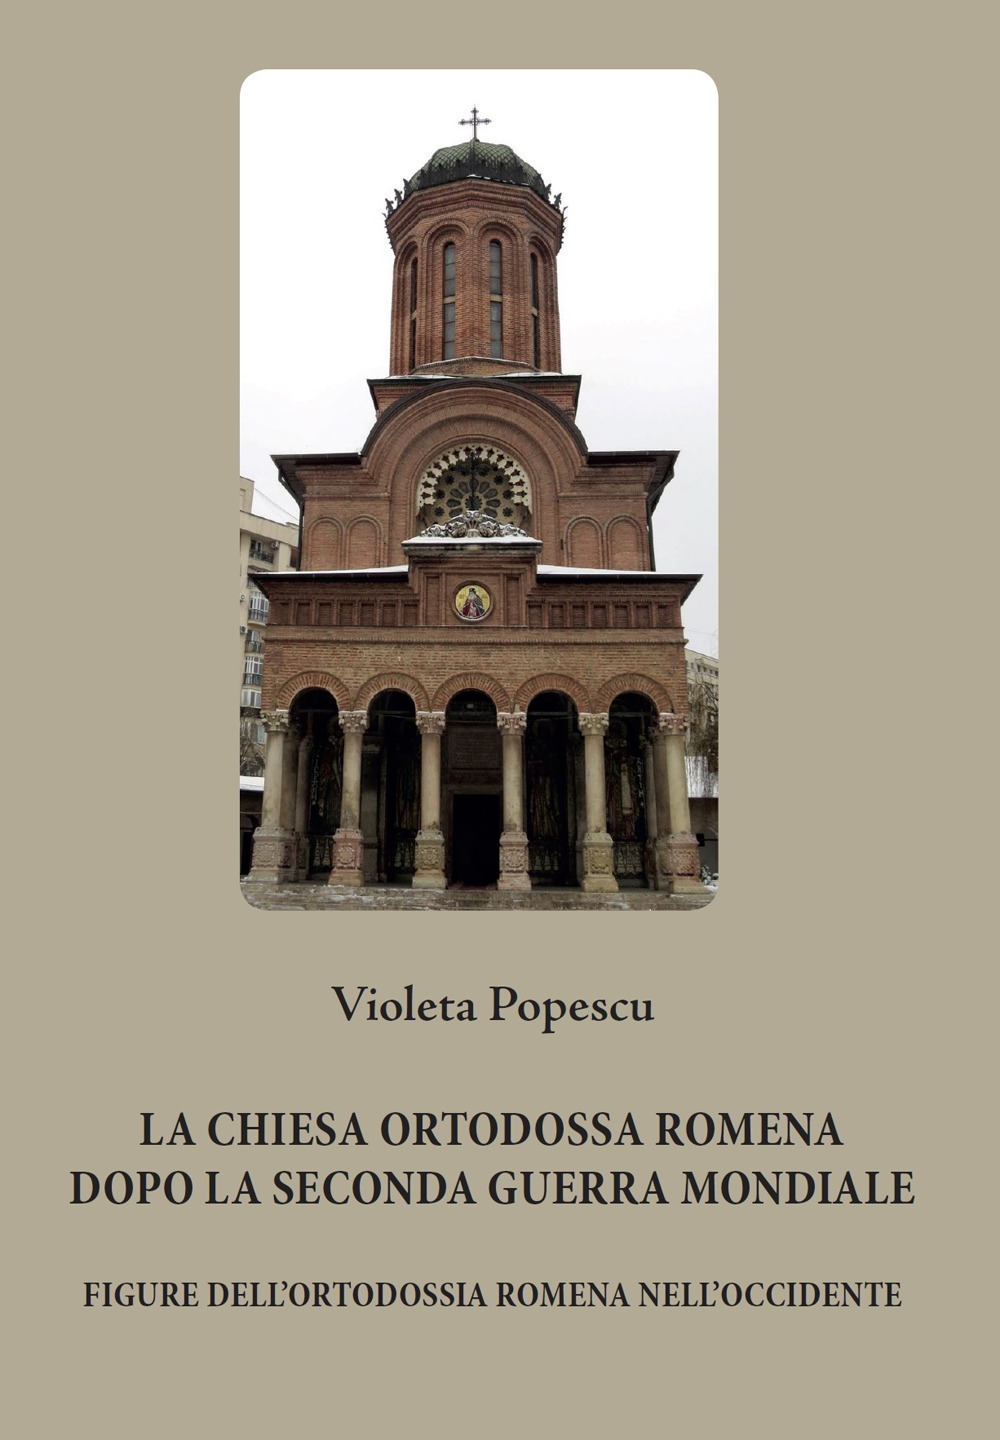 La chiesa ortodossa romena dopo la seconda guerra mondiale. Figure dell'ortodossia romena nell'Occidente